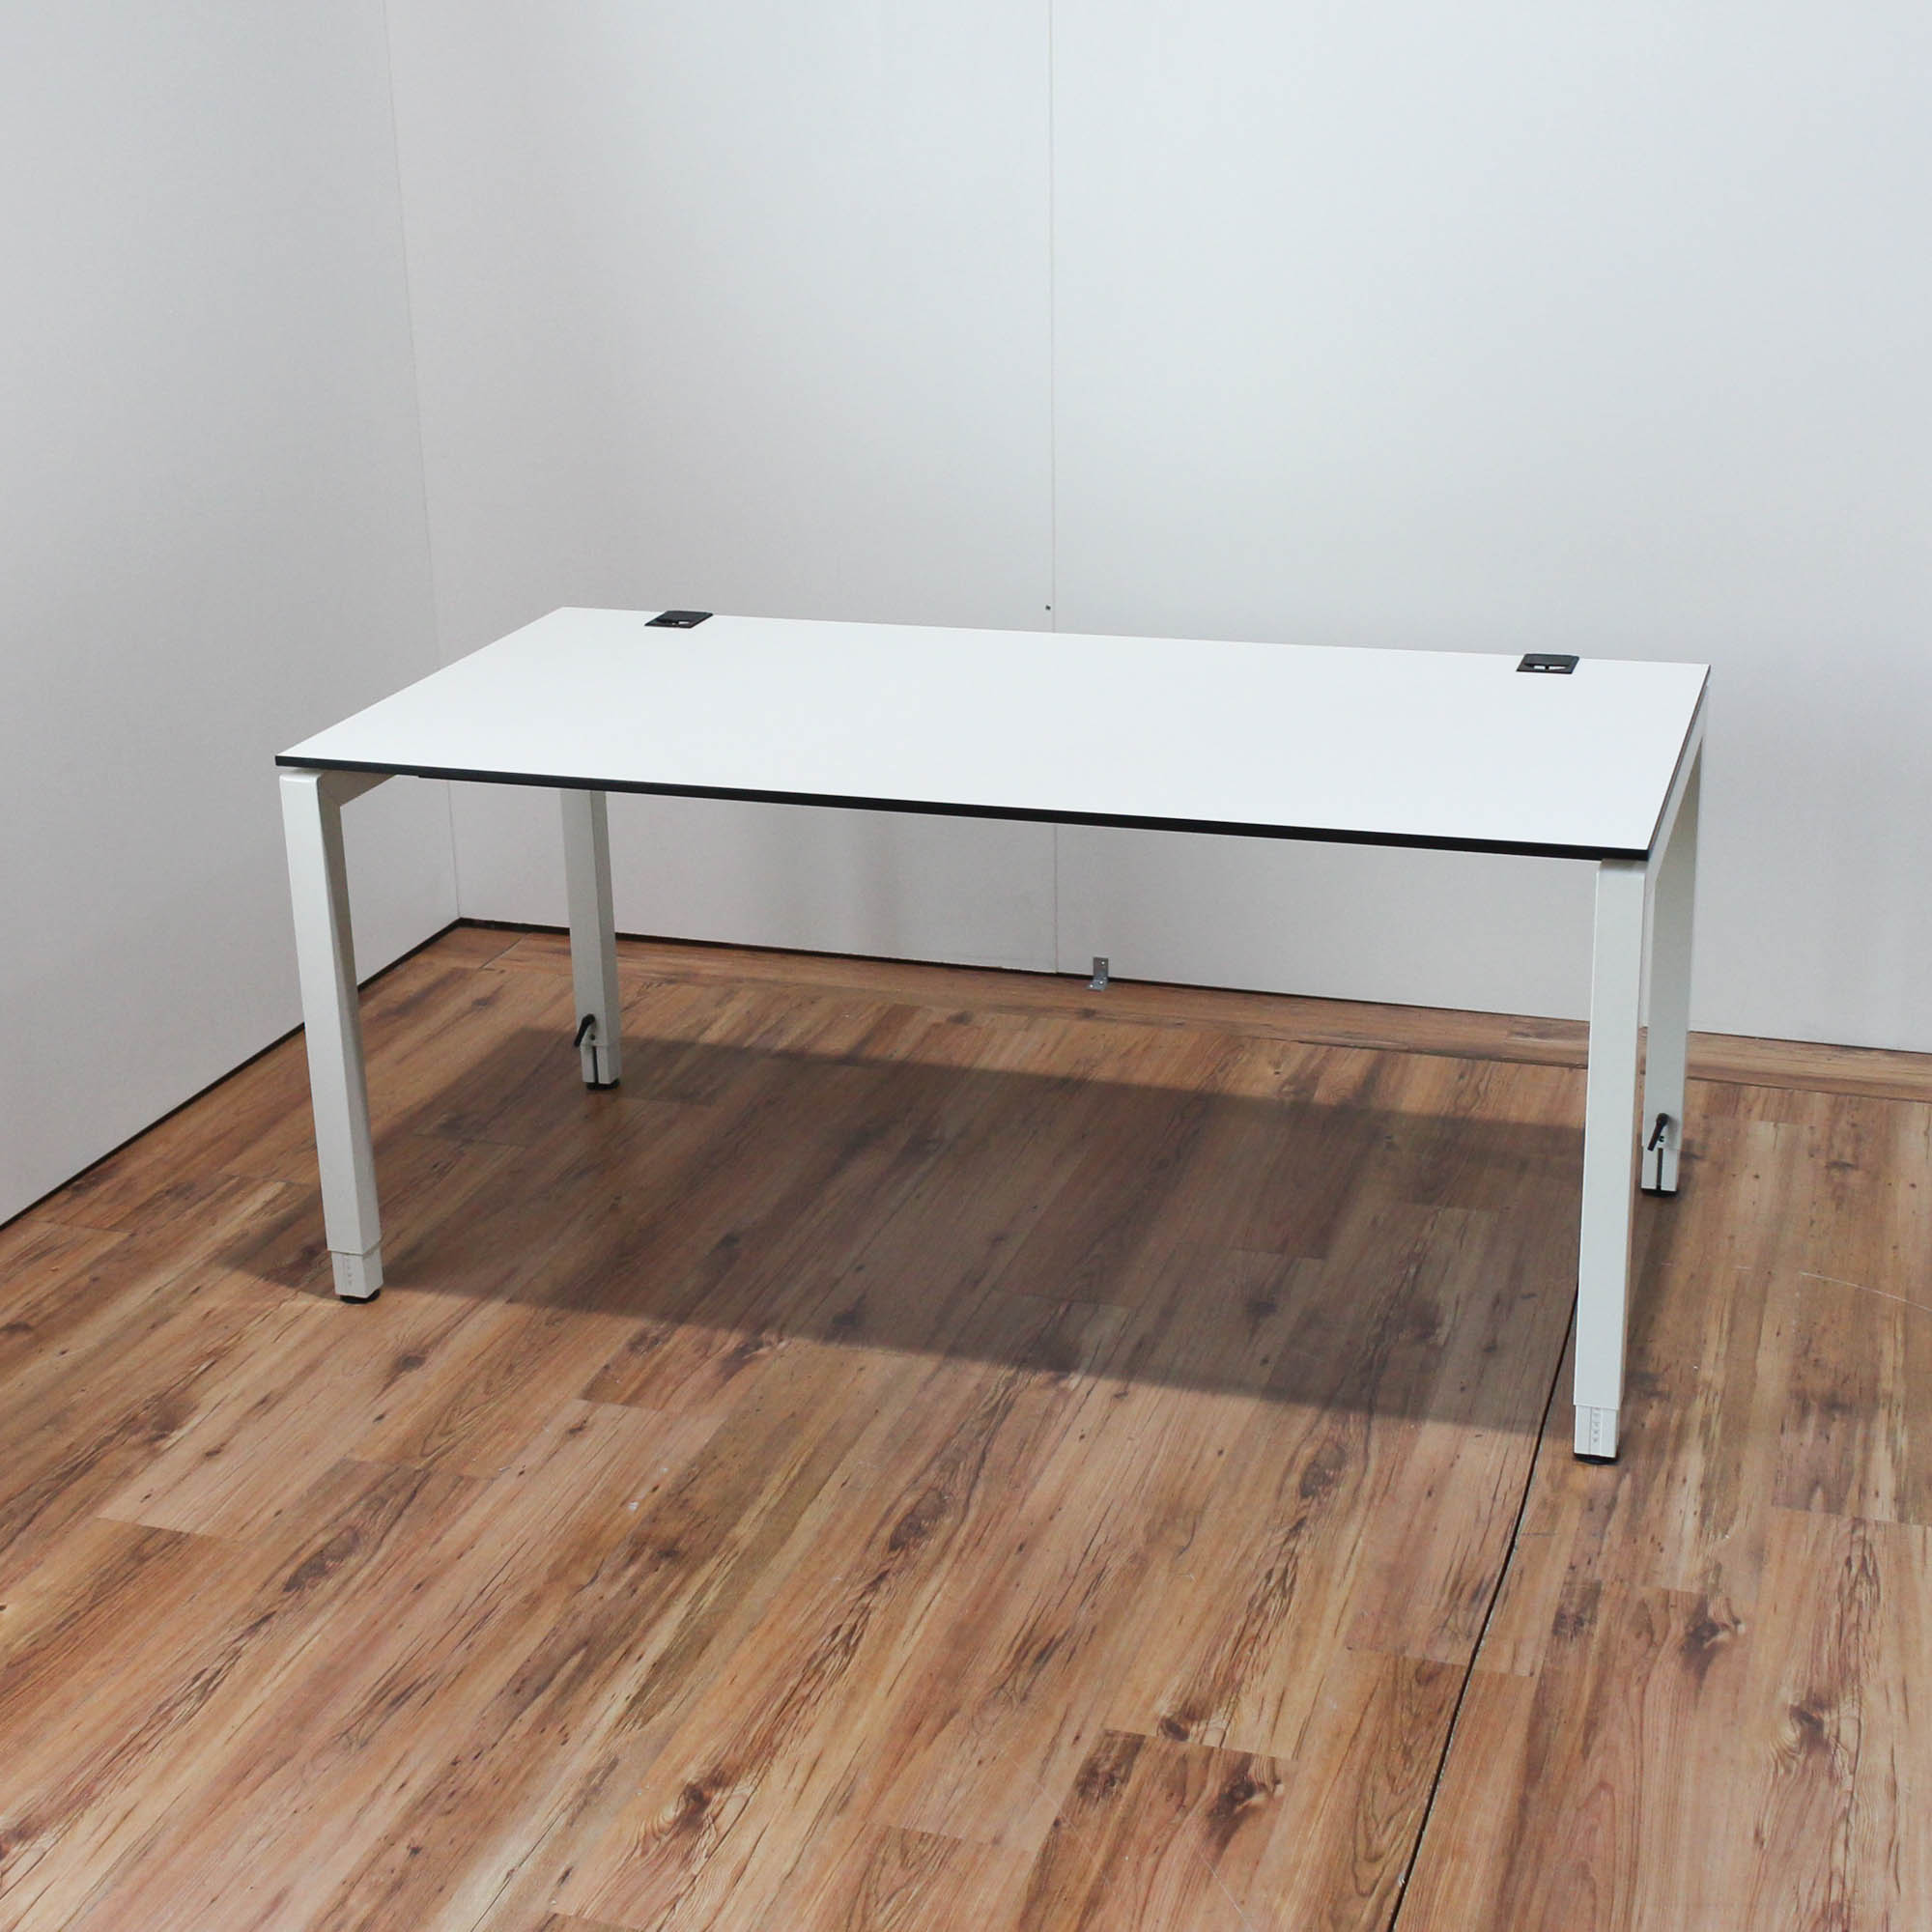 Samas Schreibtisch - 160x80cm in weiß - Tischkante schwarz - 4-Fußgestell weiß